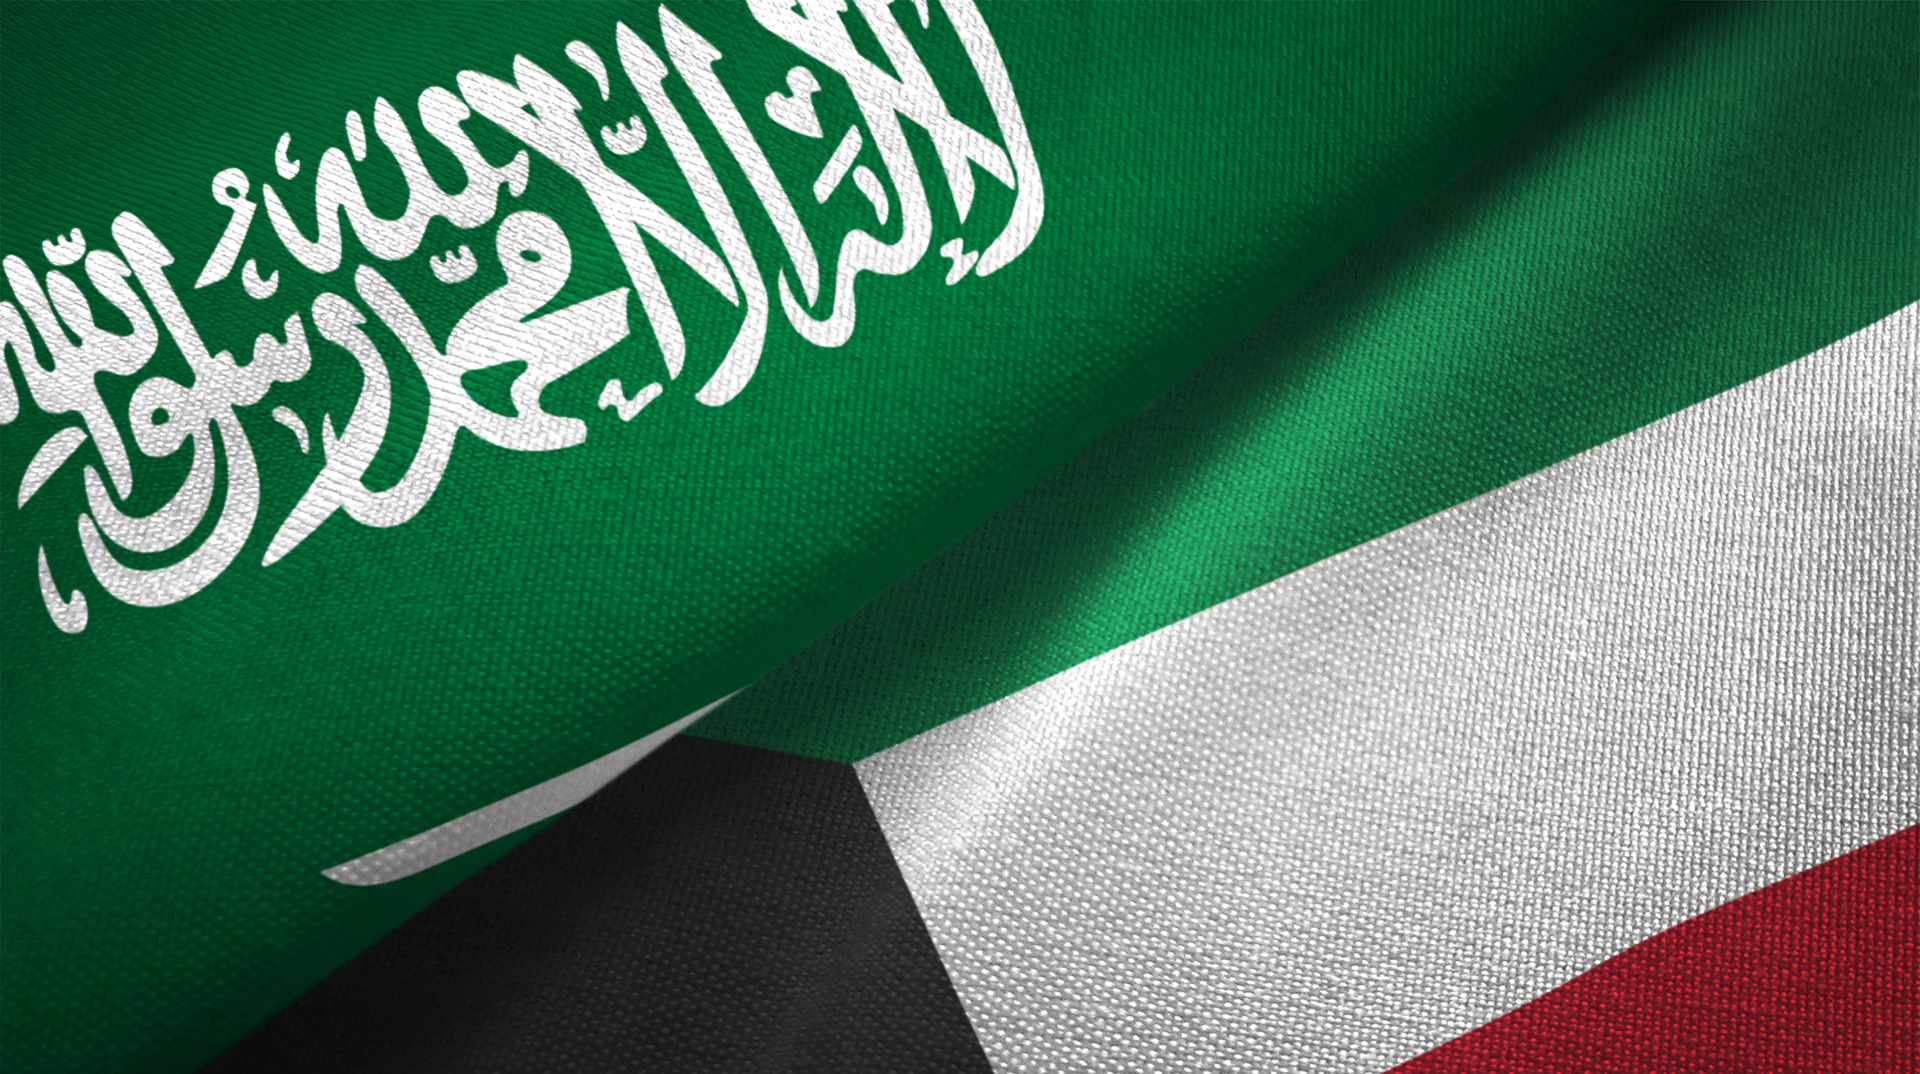 وزير النفط الكويتي: حقل الدرة حق حصري للسعودية والكويت وإيران هي من يجب أن تبادر للتفاوض